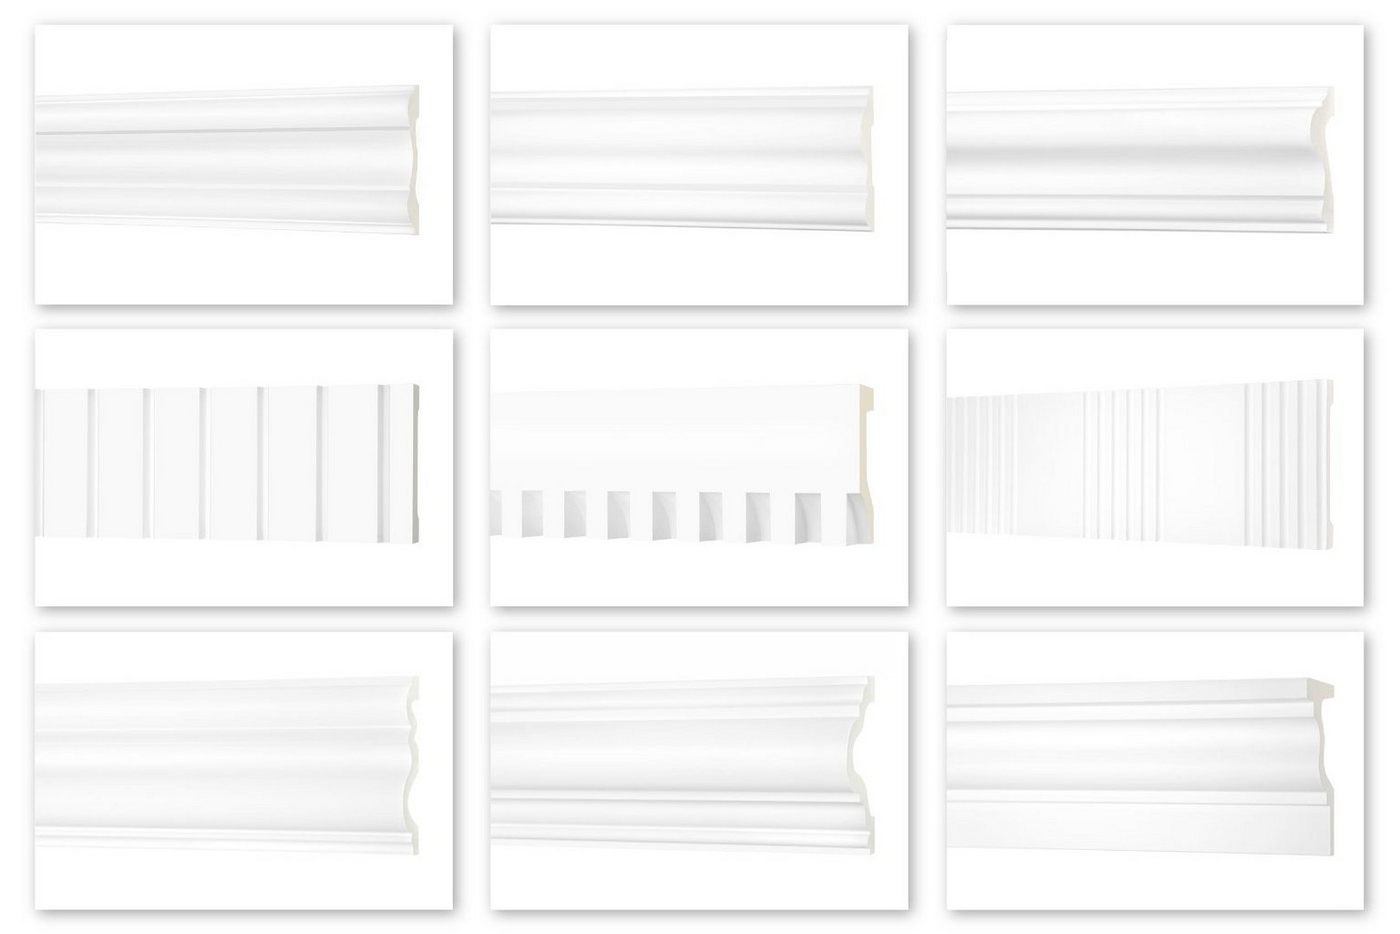 Hexim Perfect Stuckleiste AD 377, Flachleiste aus PU Serie 2 - Stuckleiste glatt, weißes Zierprofil, hart & stoßfest - Wandleiste vorgrundiert von Hexim Perfect